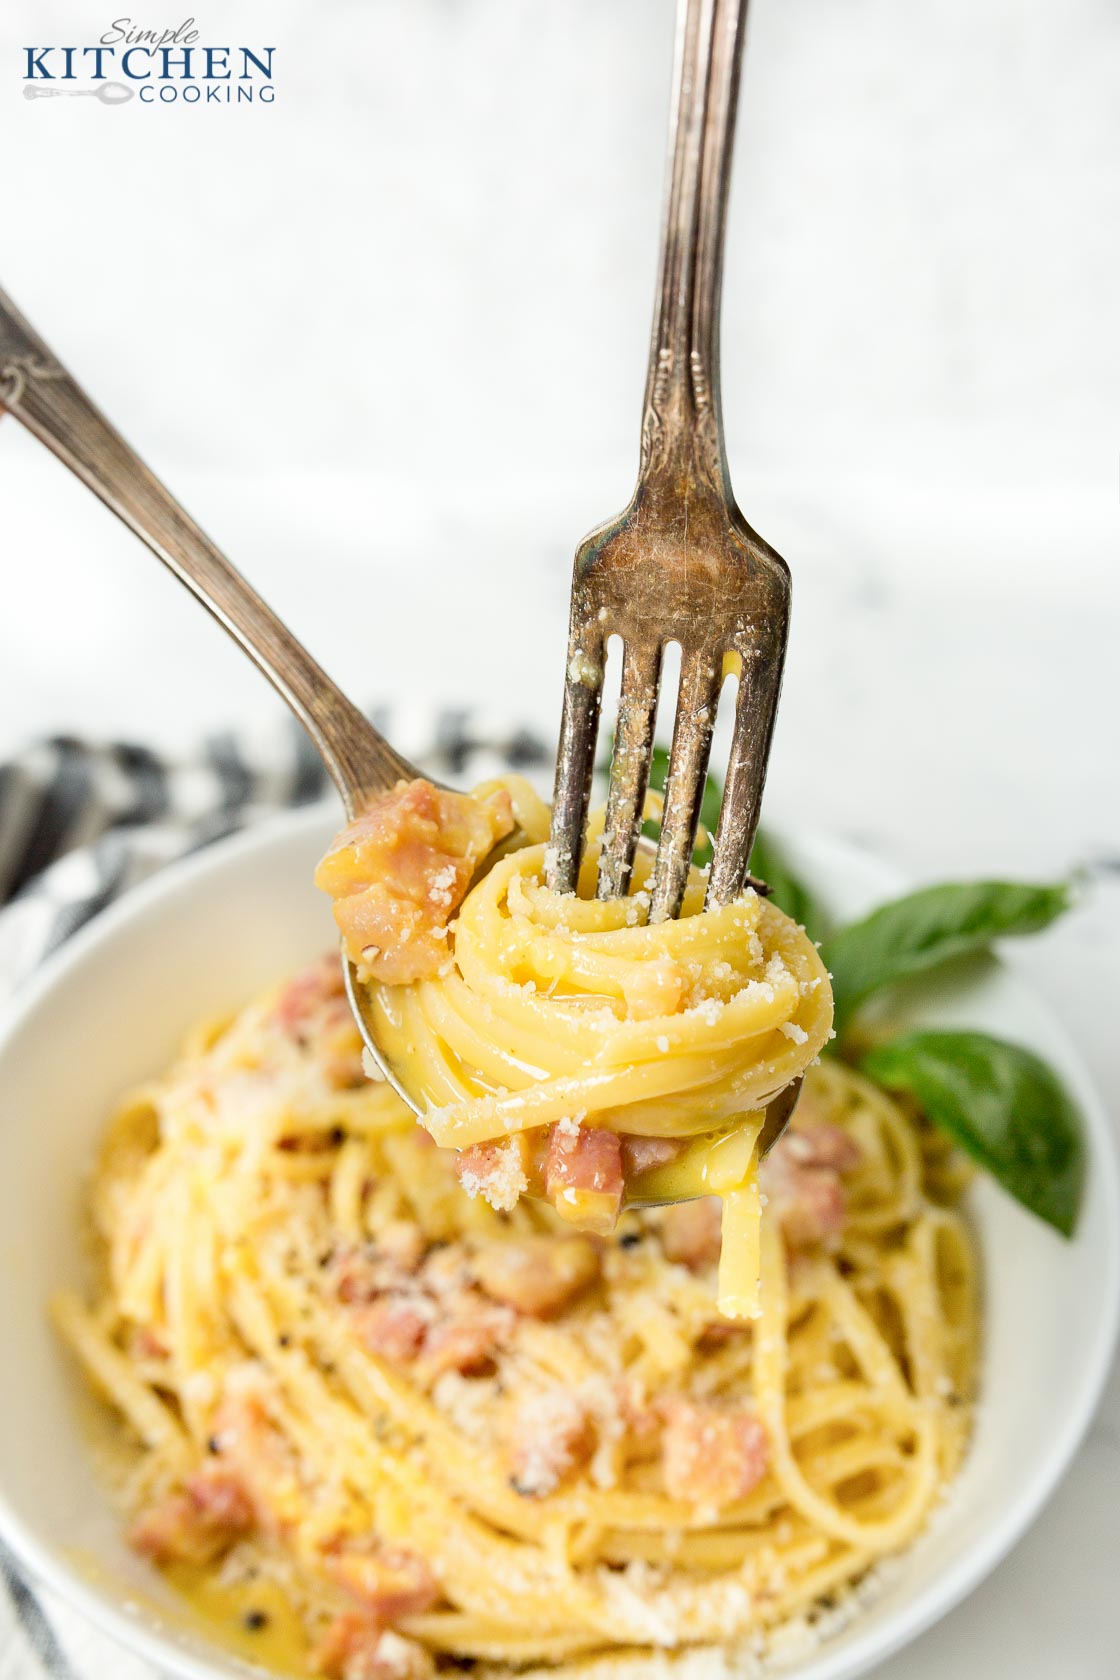 Bowl of pasta carbonara